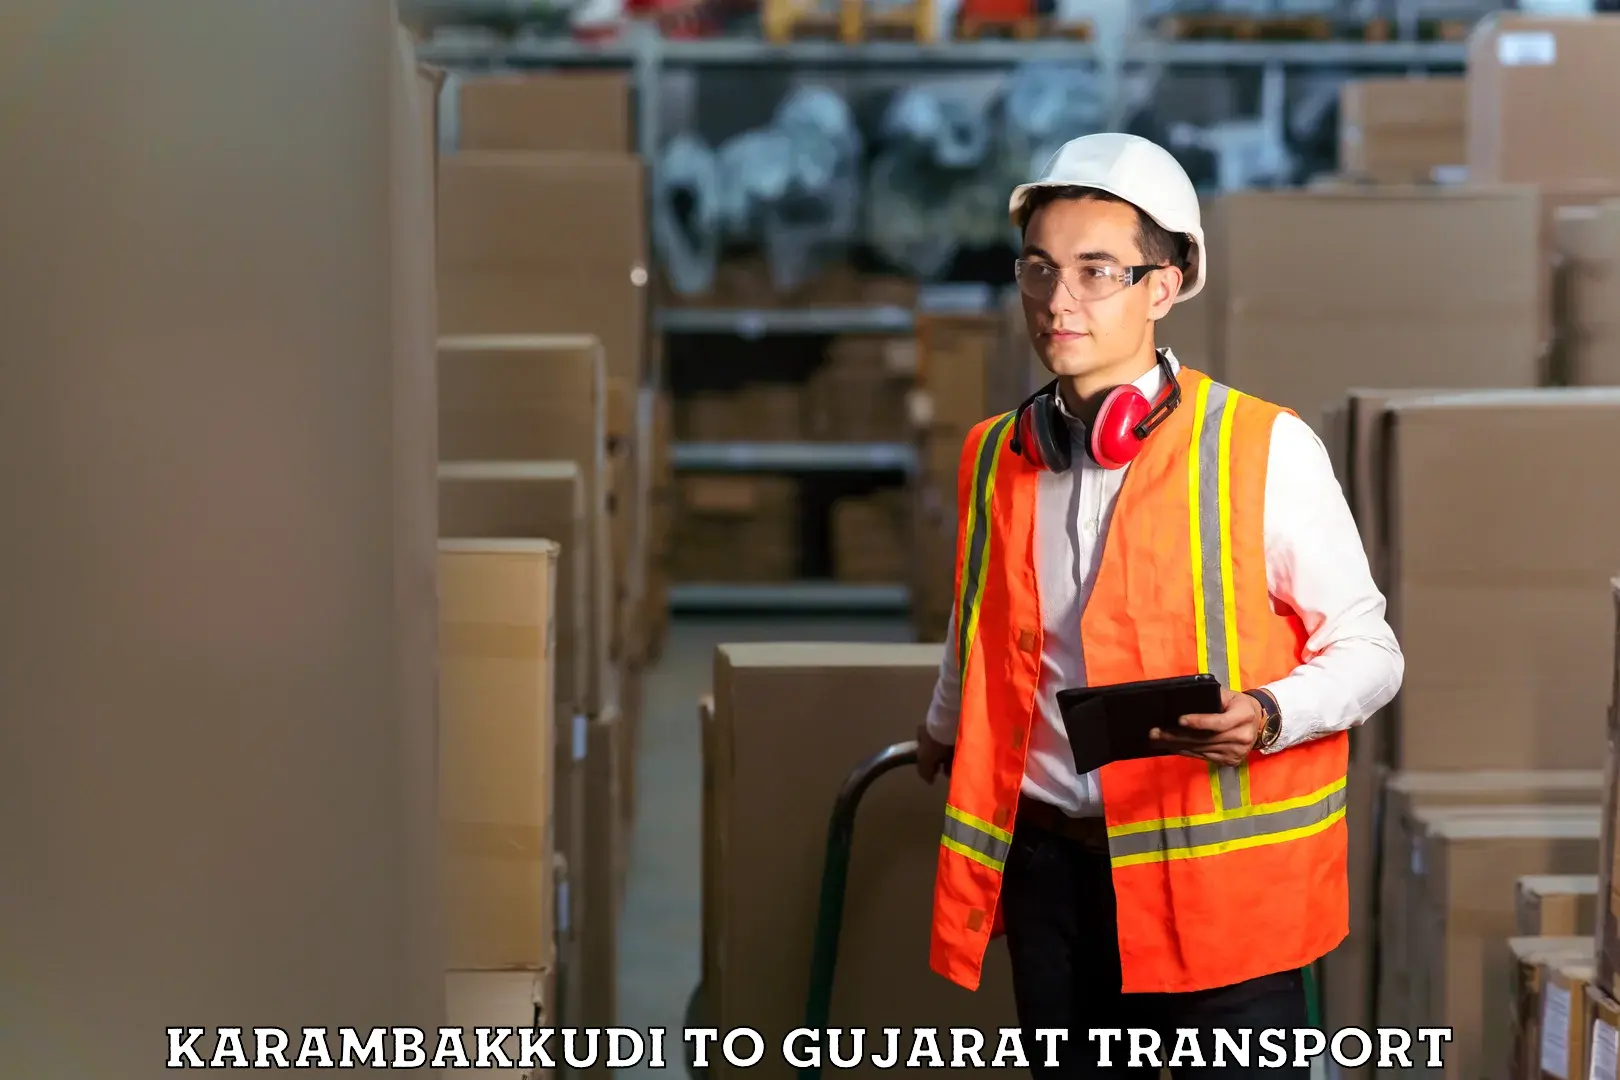 Road transport online services Karambakkudi to Gujarat